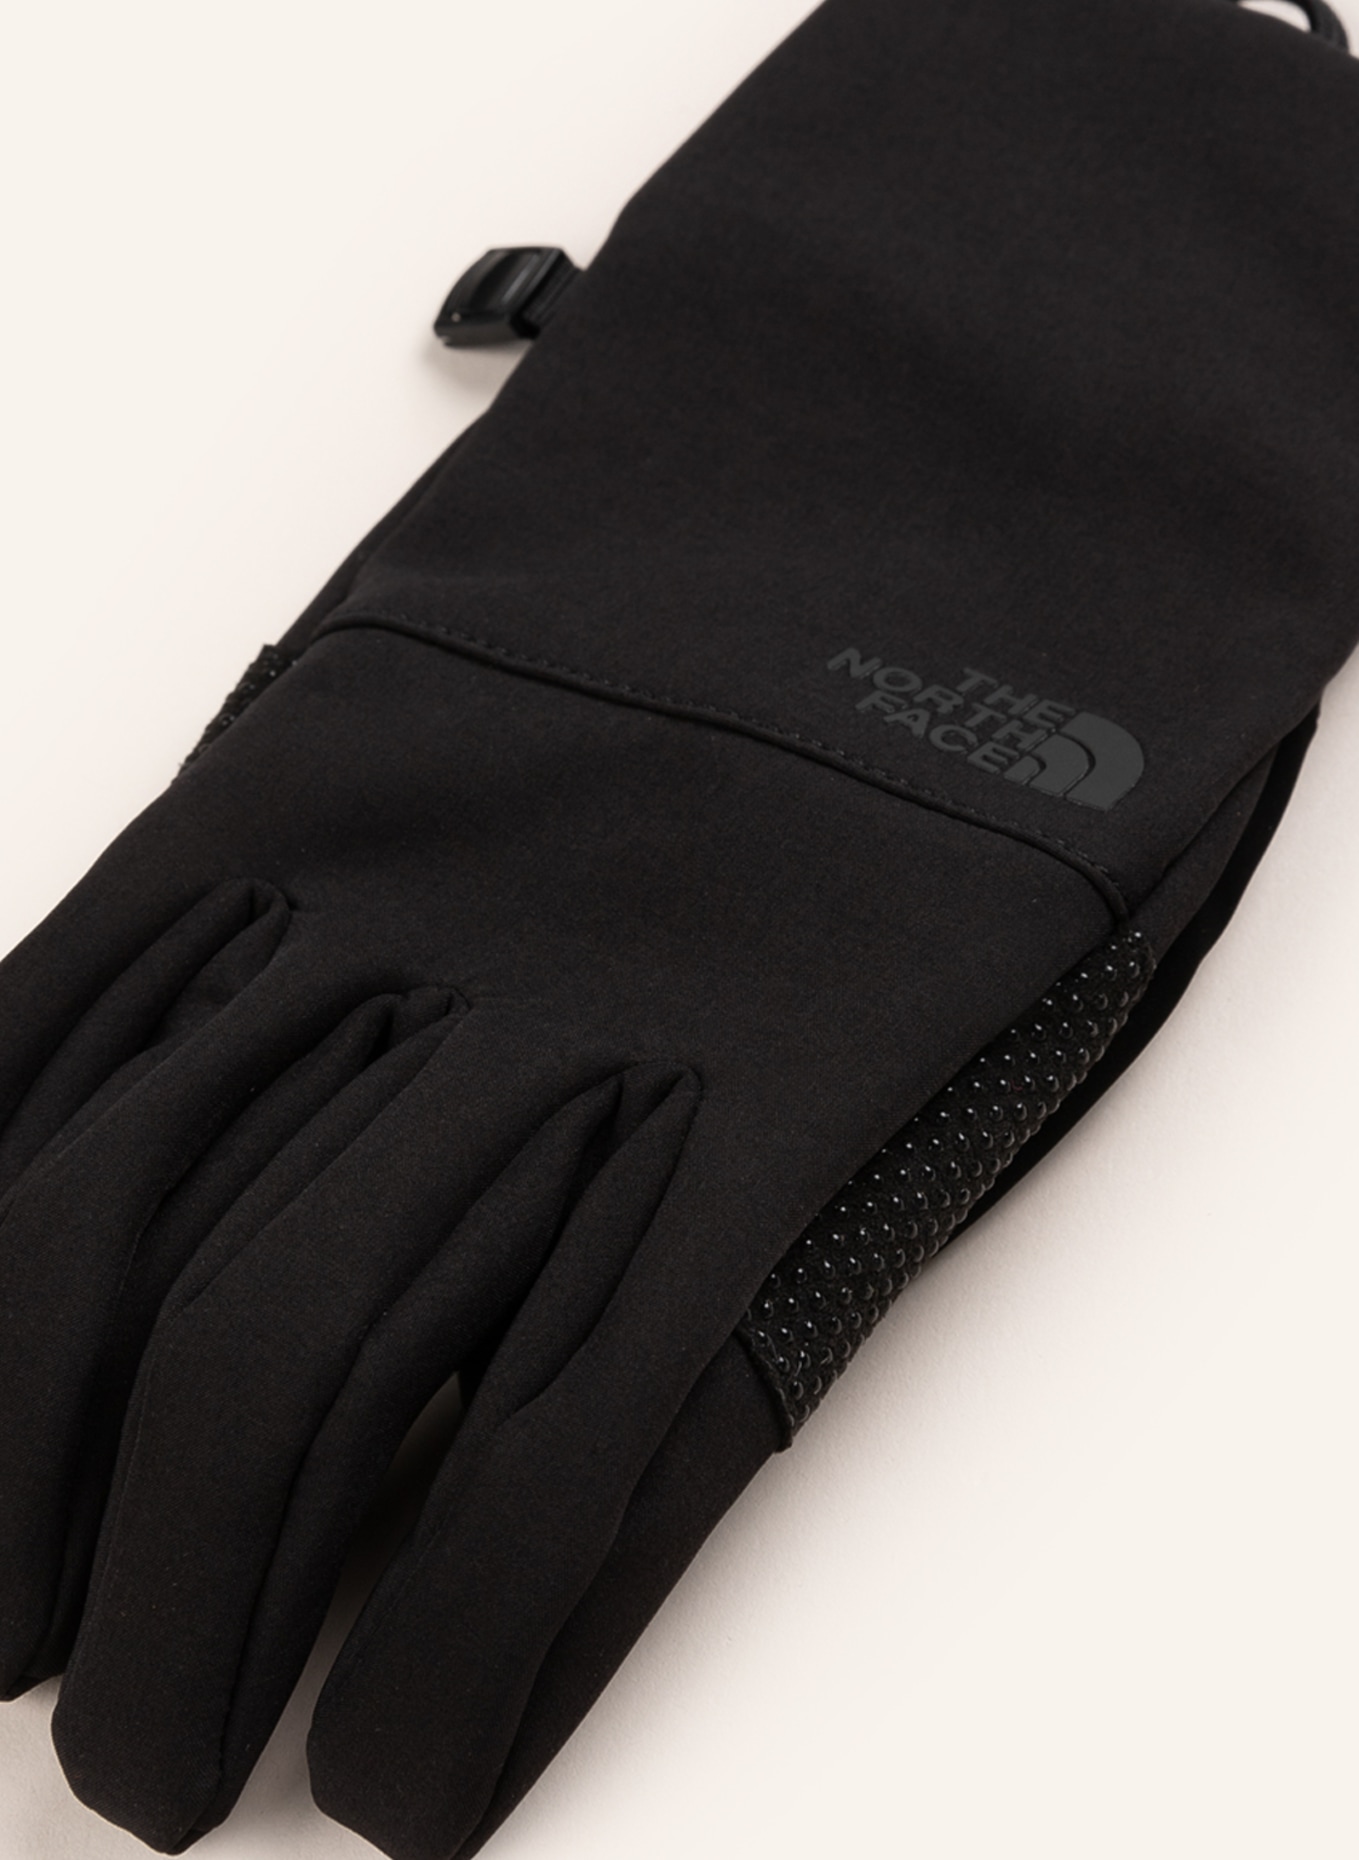 THE NORTH FACE Multisport-Handschuhe Touchscreen-Funktion mit APEX ETIP schwarz in